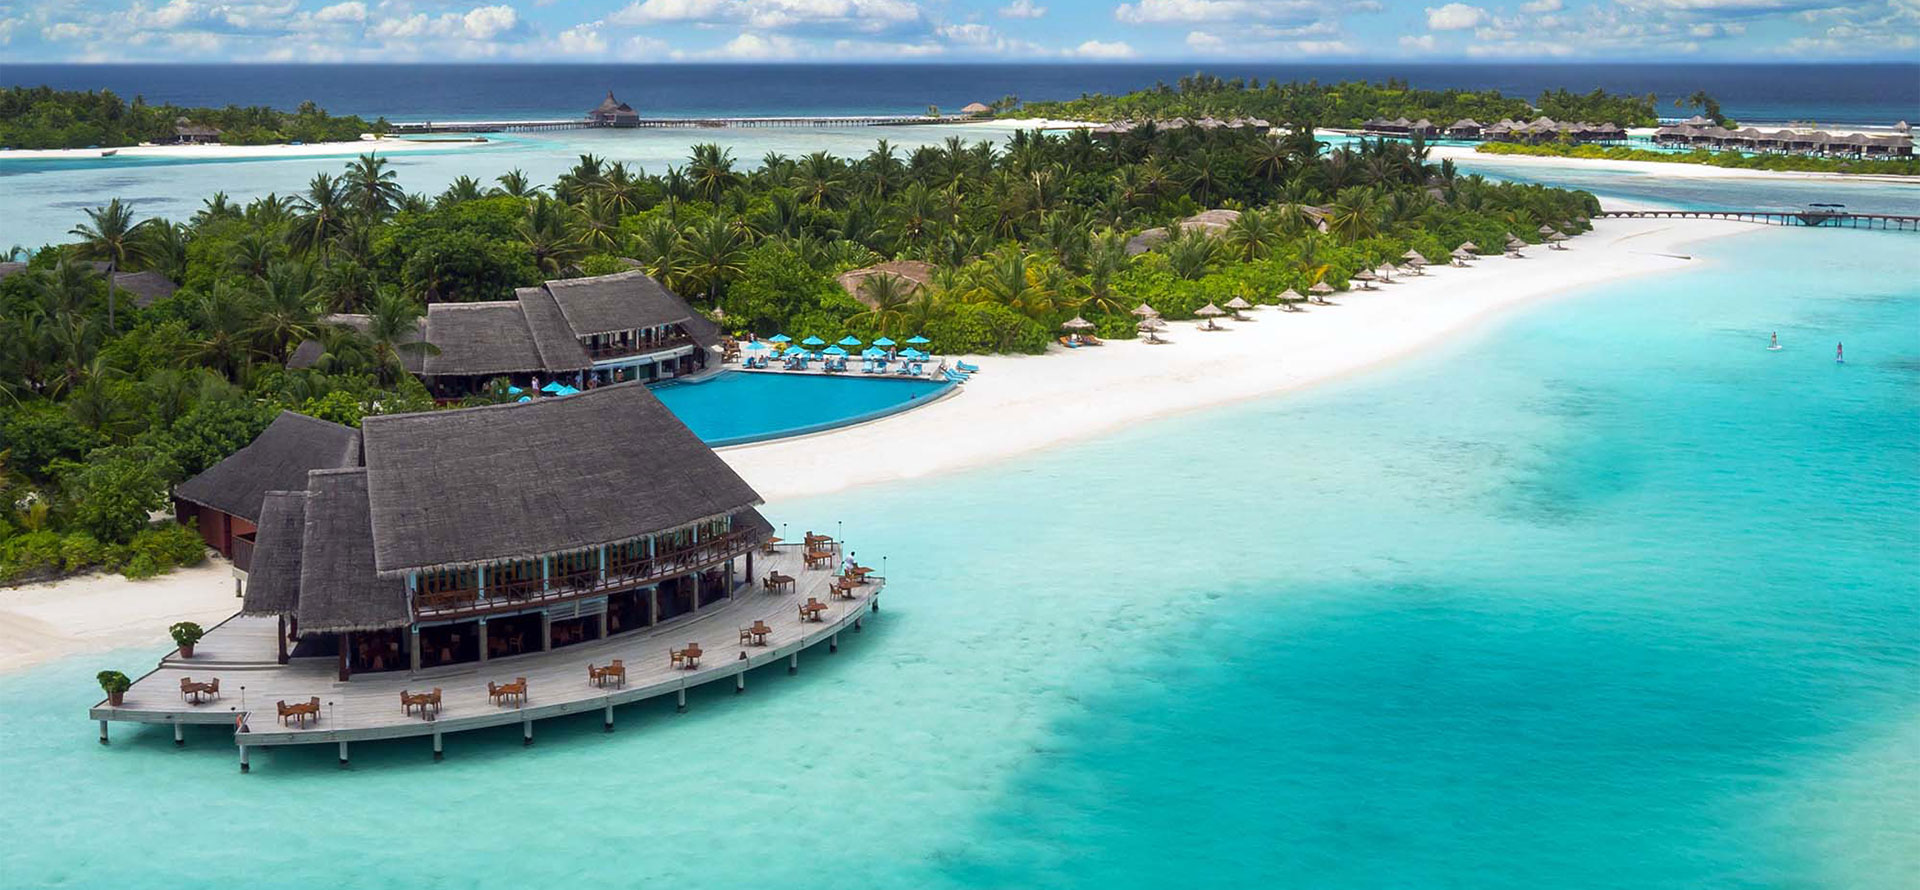 Resort in Tahiti and Maldives.